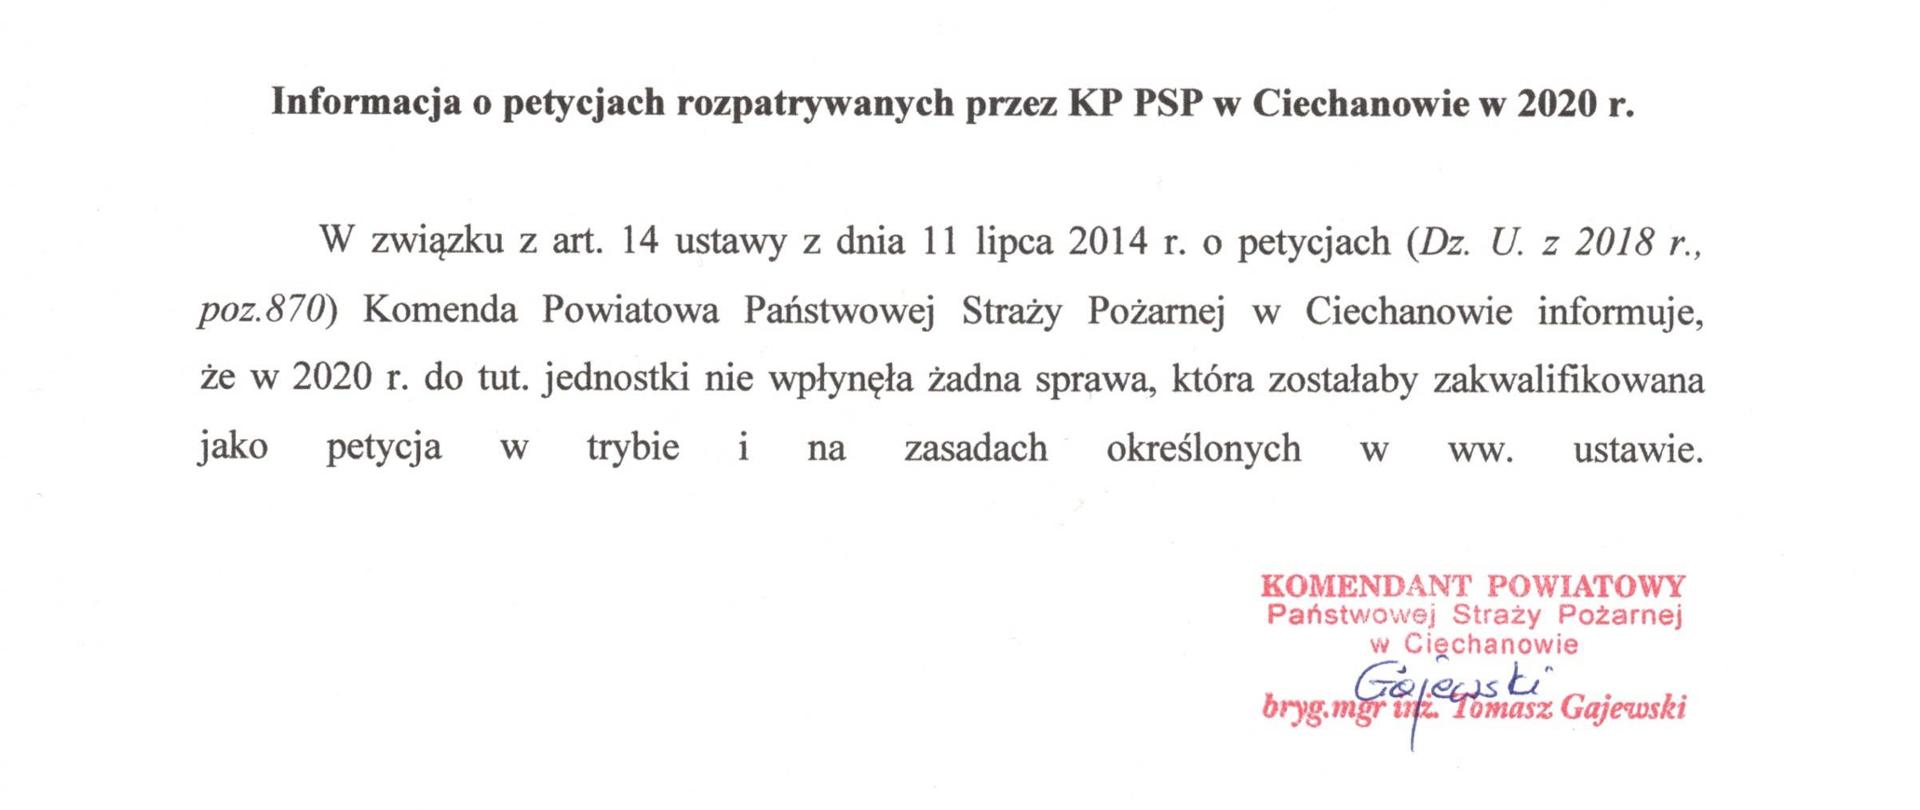 Informacja o petycjach rozpatrywanych przez KP PSP w Ciechanowie w 2020r.